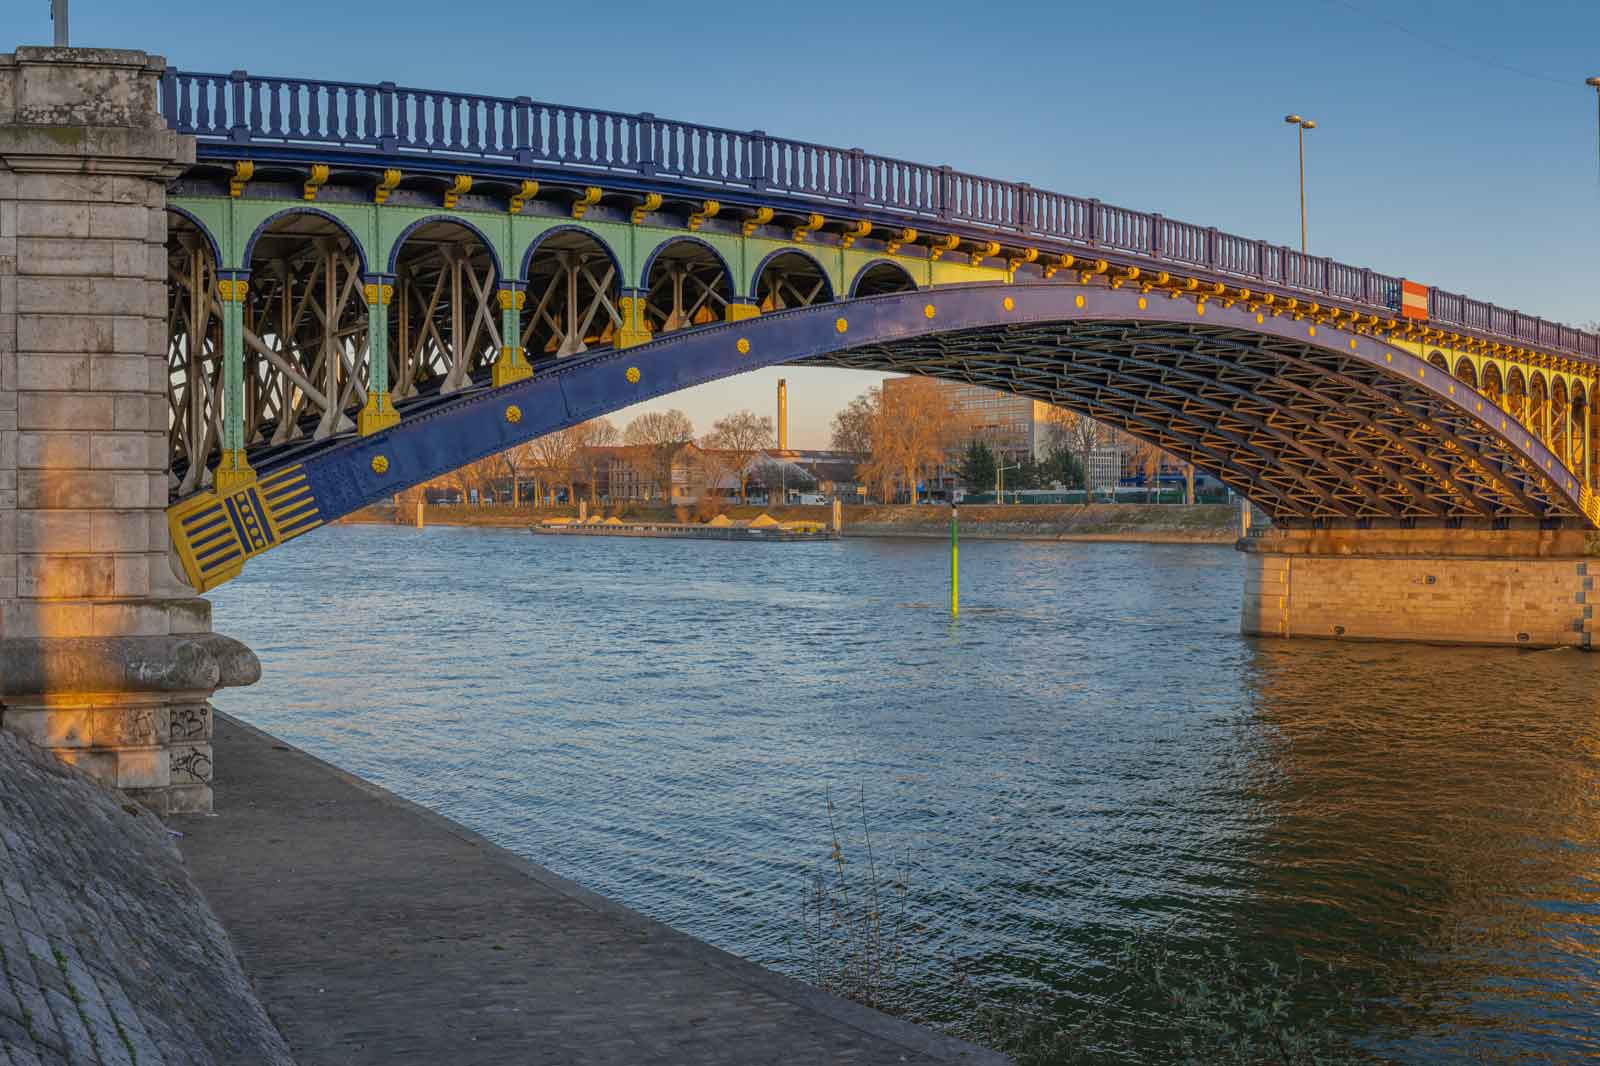 A bridge in Paris